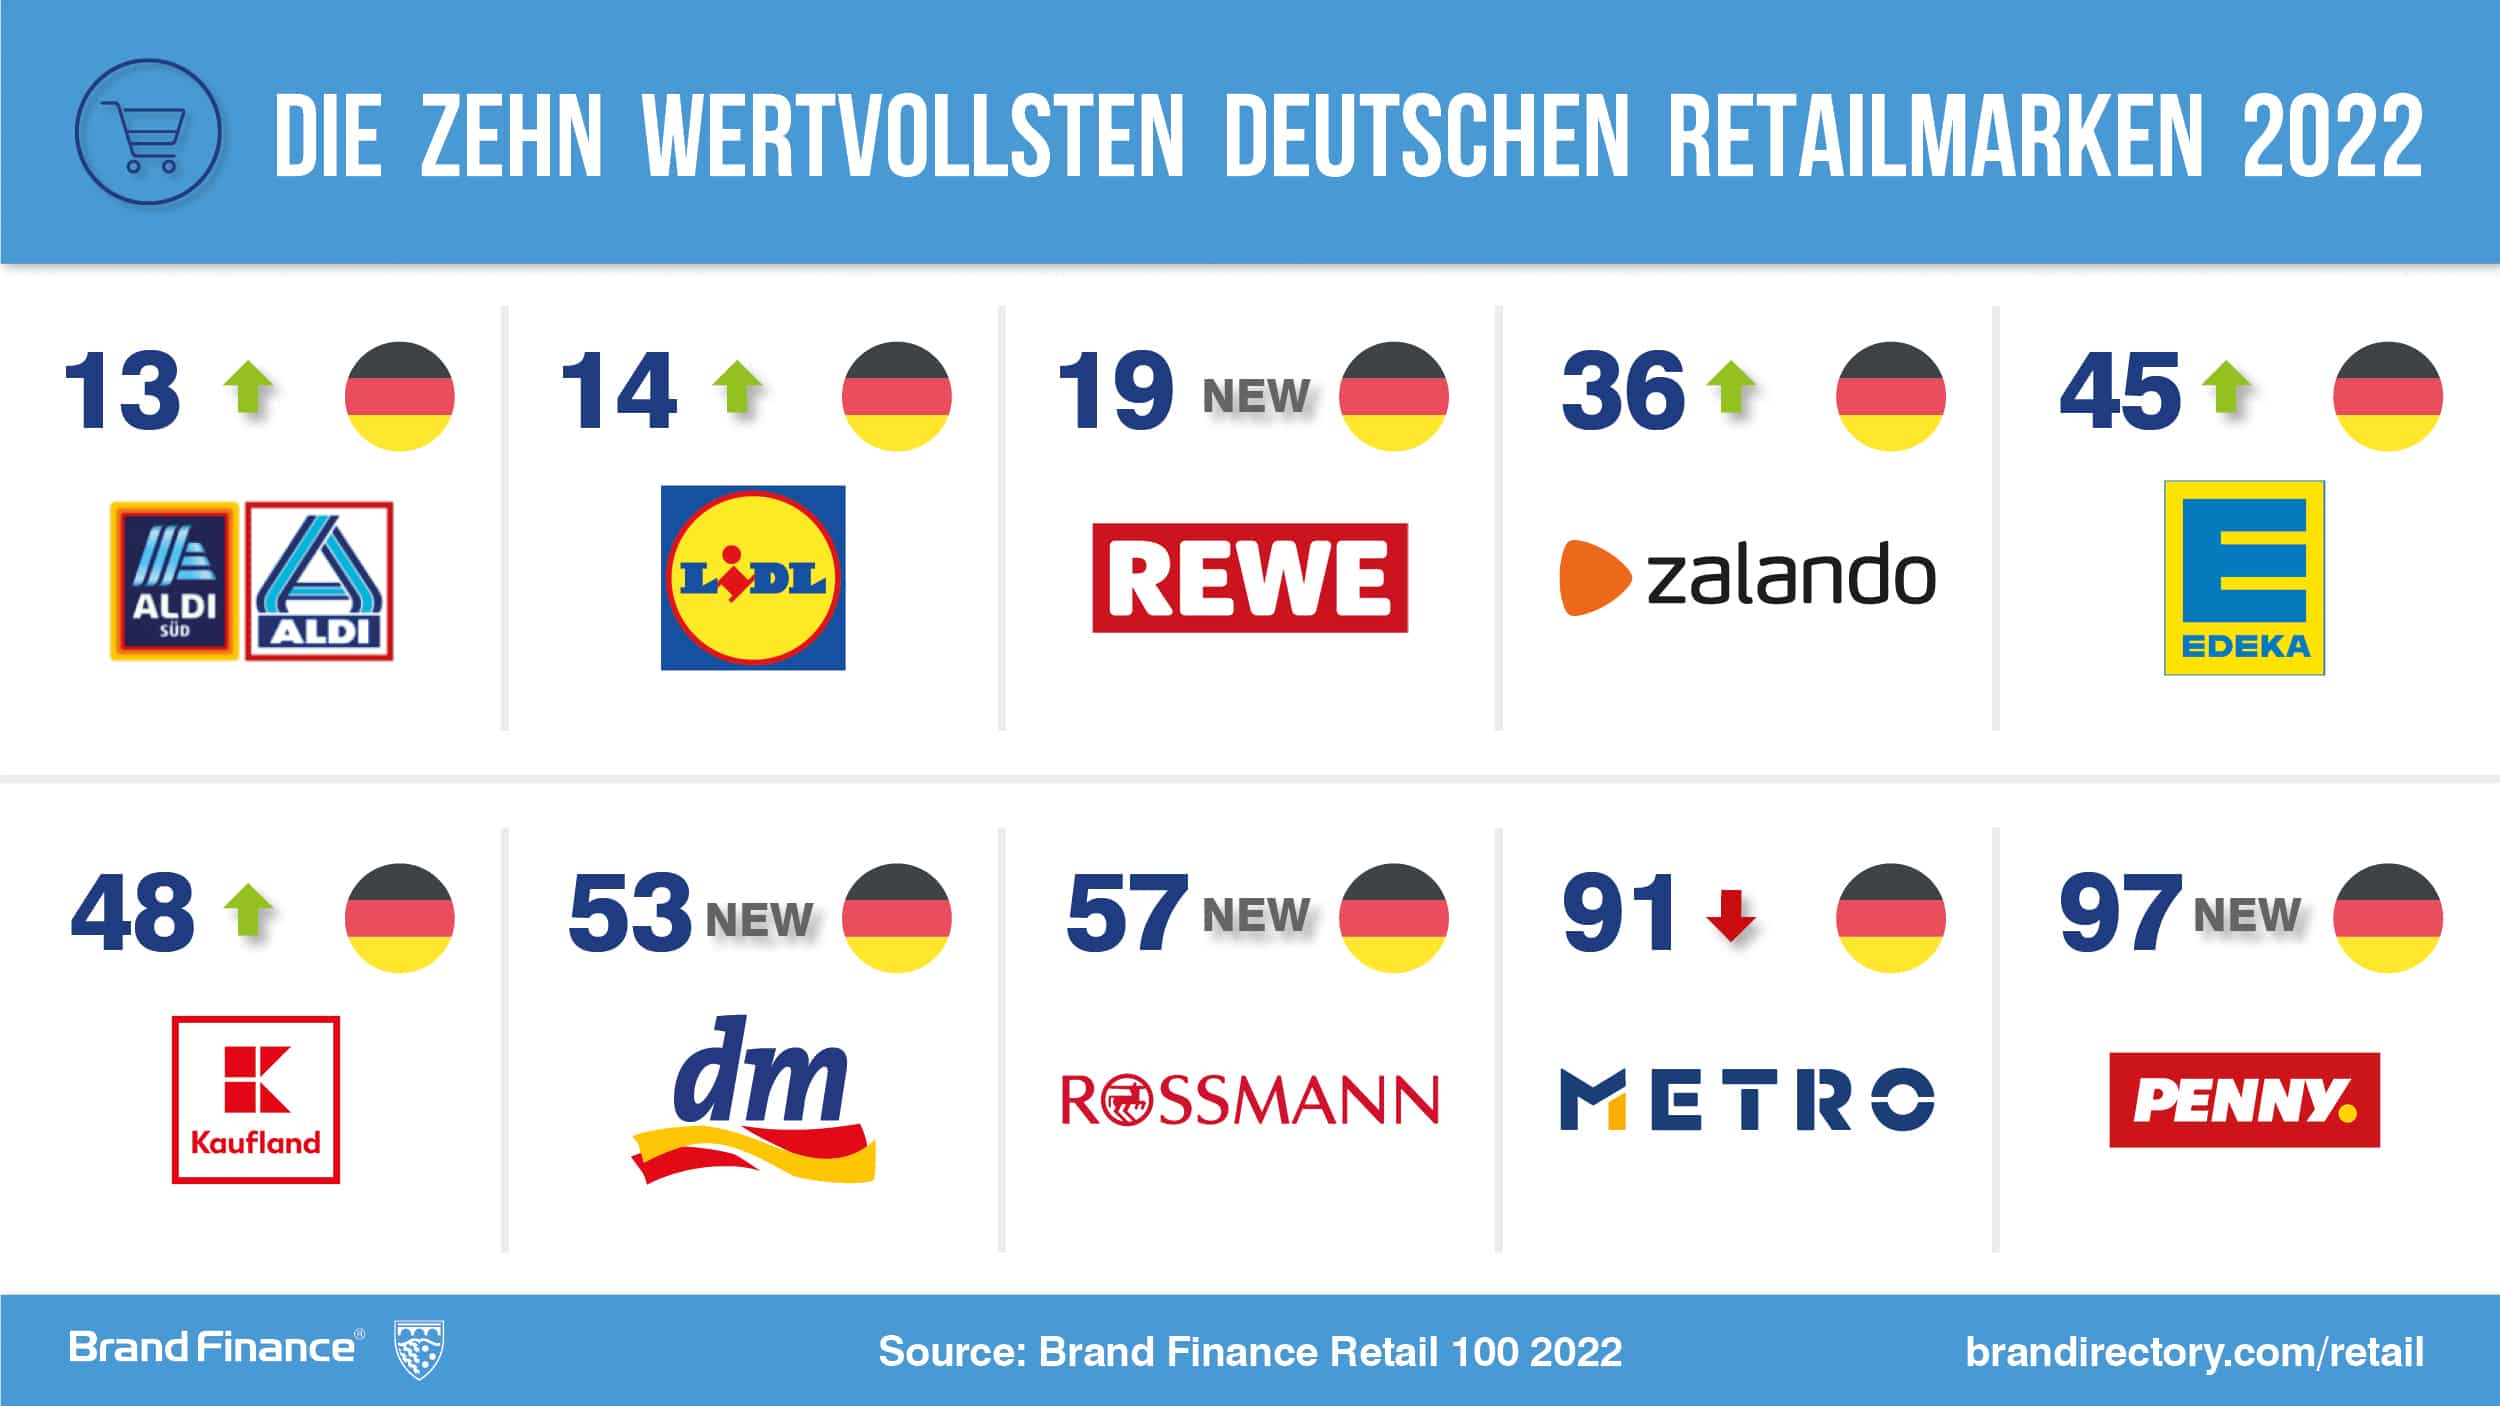 Einzelhandel: Aldi, Lidl, REWE und Zalando sind Top-Marken in Europa